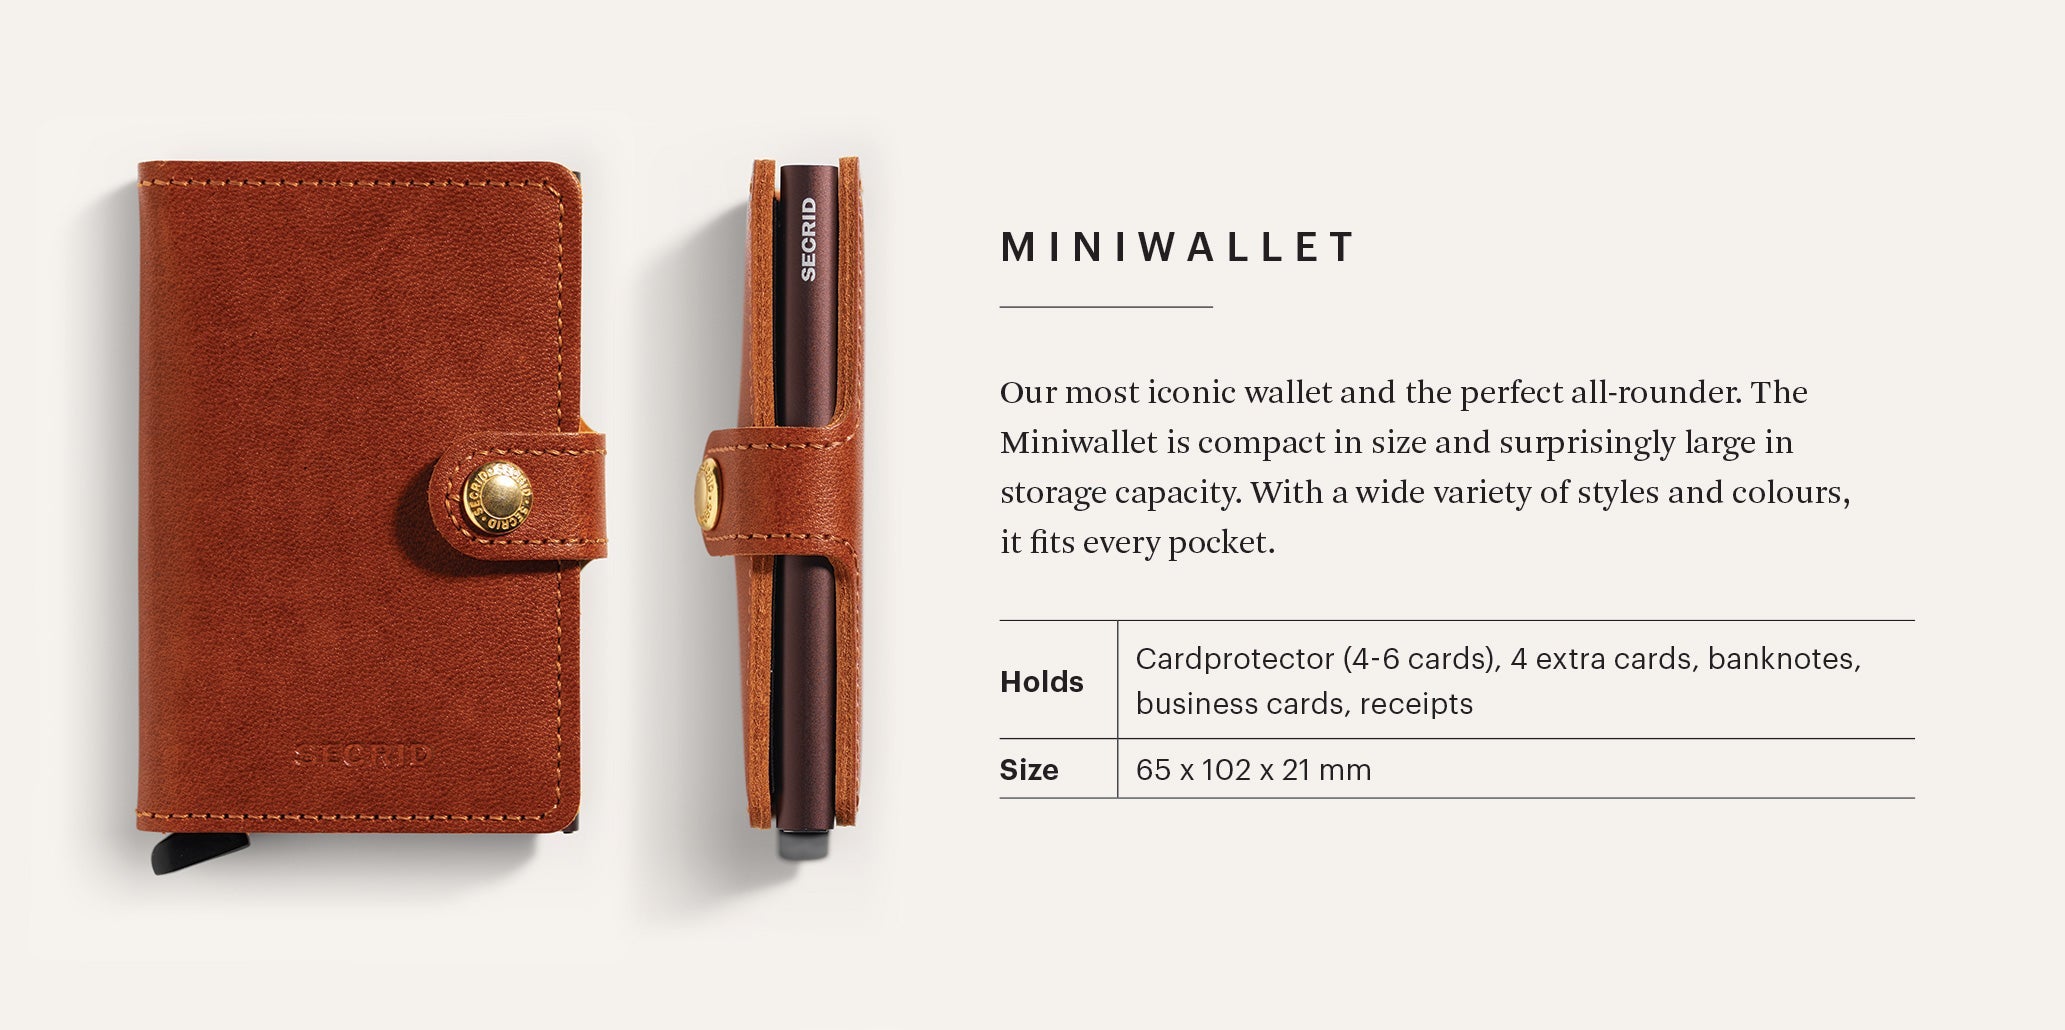 Miniwallet in Vintage Brown by Secrid Wallets - Lifestory